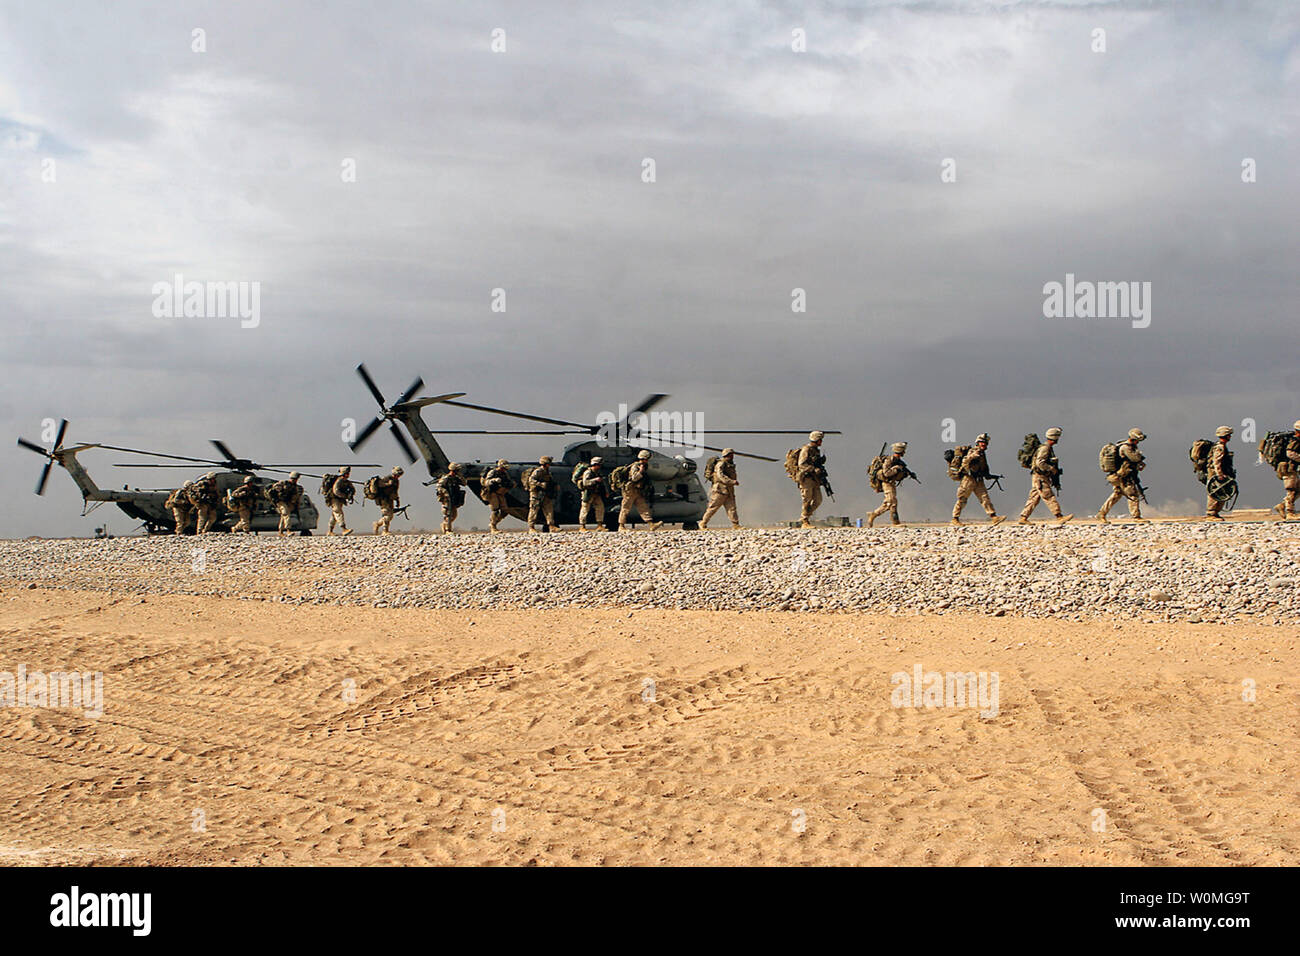 Infantes de Marina de los Estados Unidos realizar simulacros de on y off en tipo CH-53D 'Super Stallion' Dwyer, Campamento de helicópteros en la provincia de Helmand, Afganistán en enero 23, 2010. UPI/Samuel A. Nasso/U.S. Marine Corps Foto de stock